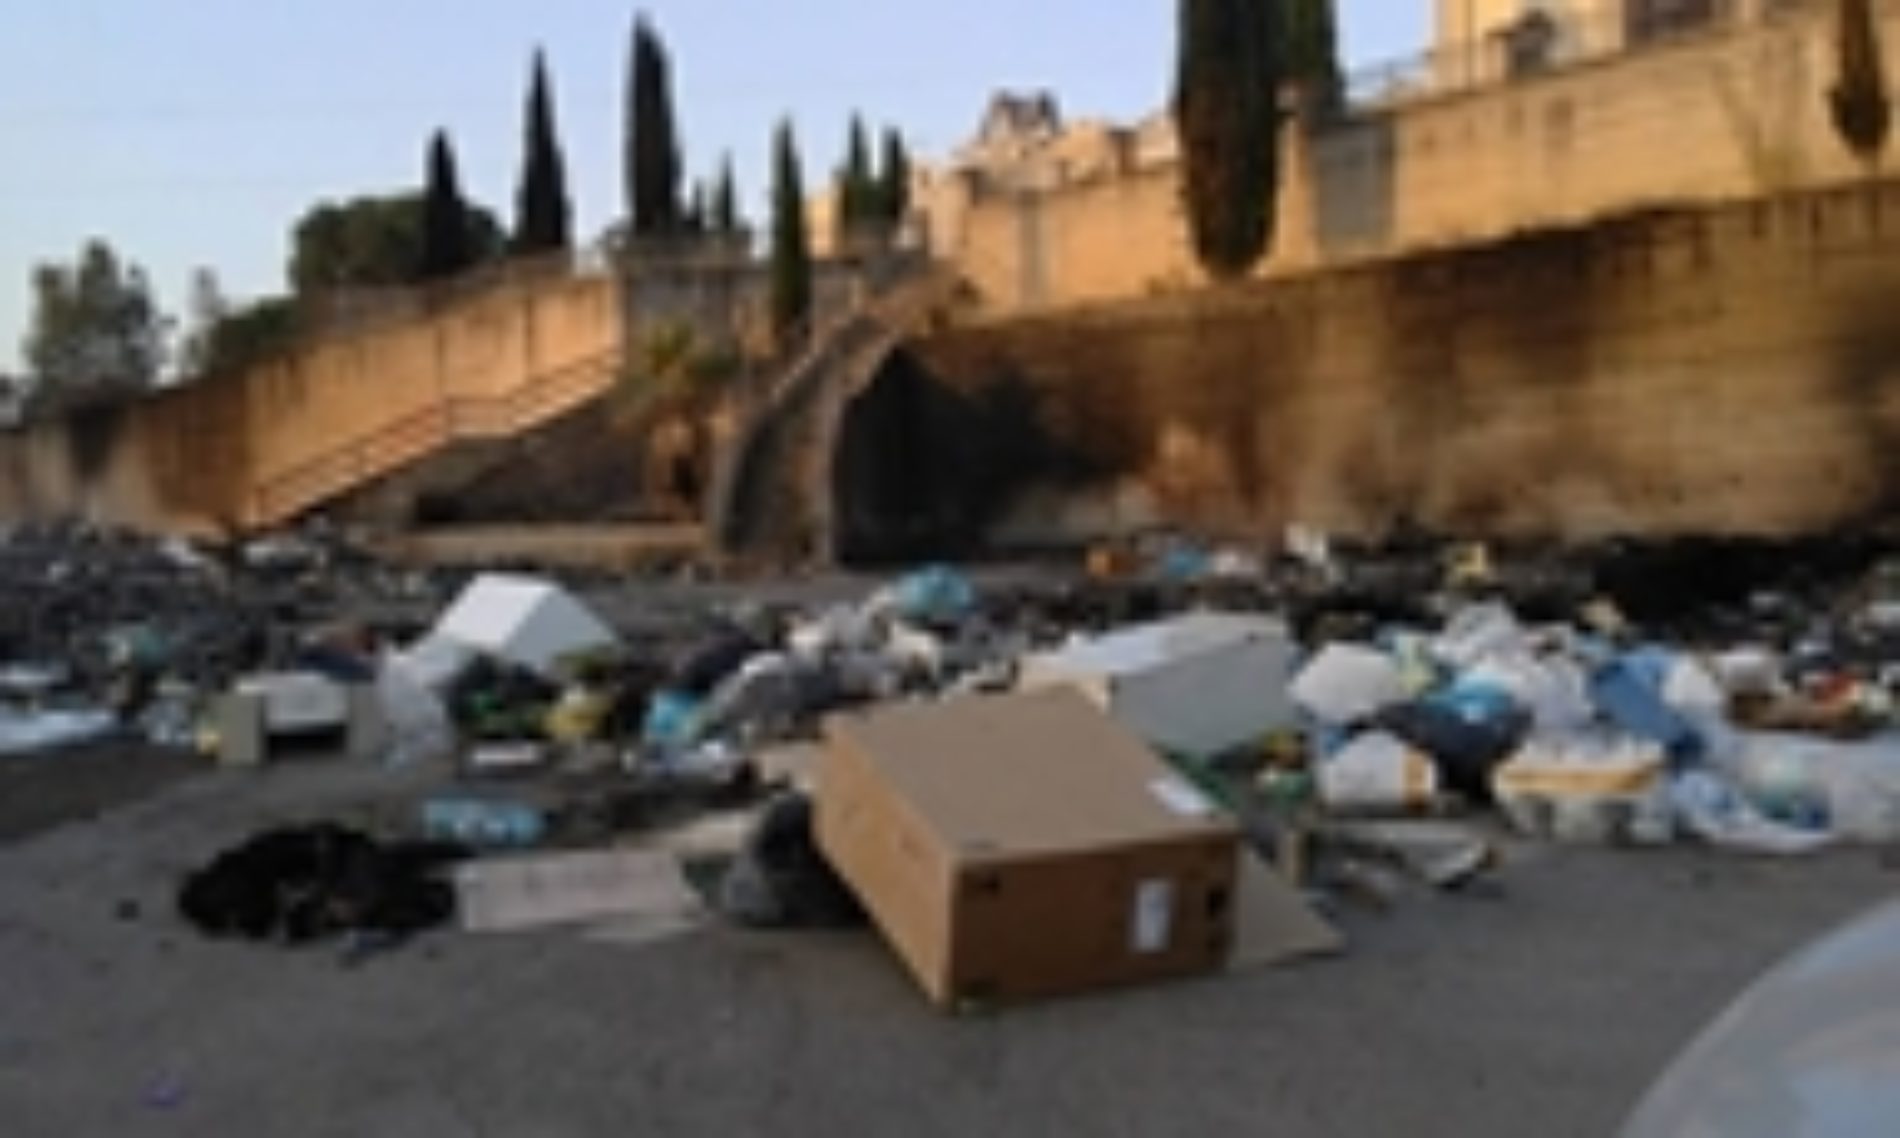 Il consiglio comunale si esprime per una deroga per il conferimento dei rifiuti in discarica